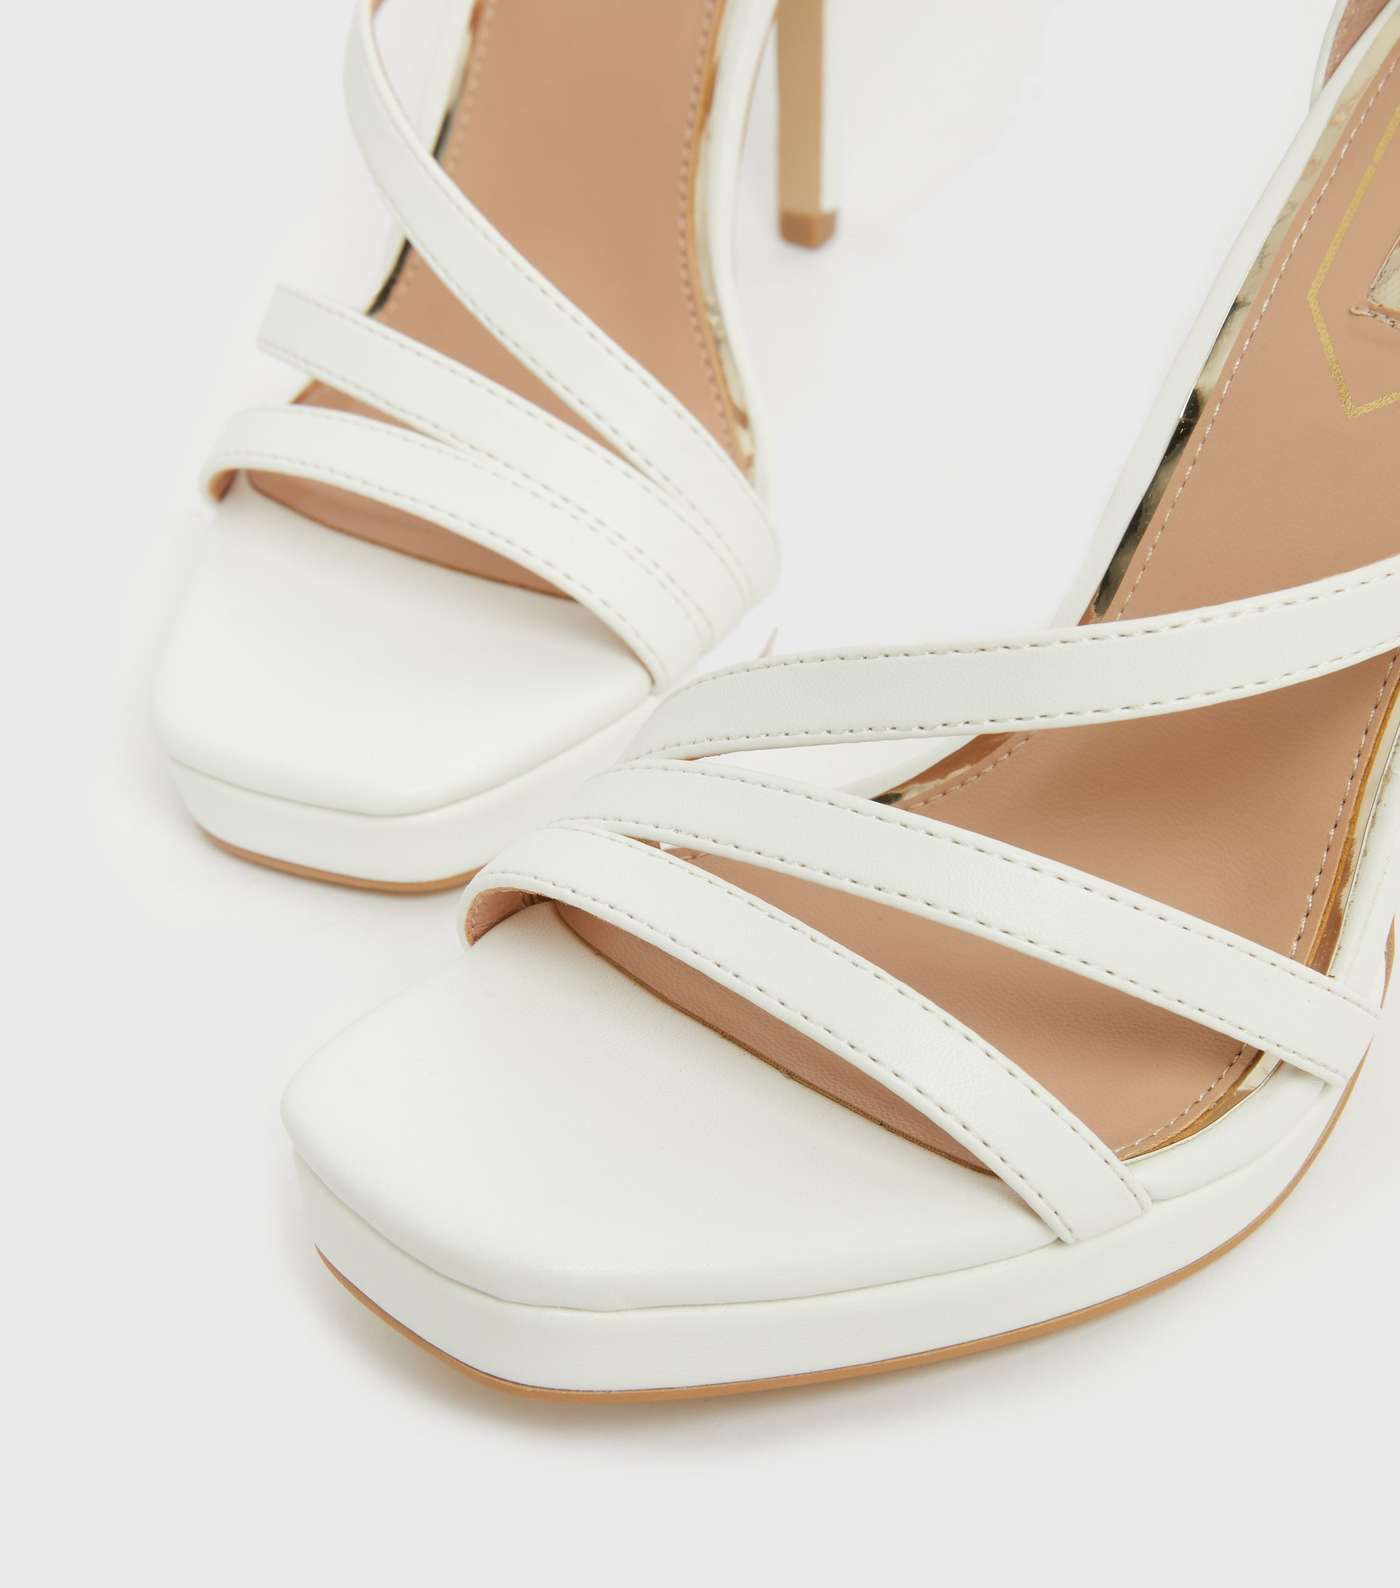 Little Mistress White Strappy Stiletto Heel Sandals Image 4